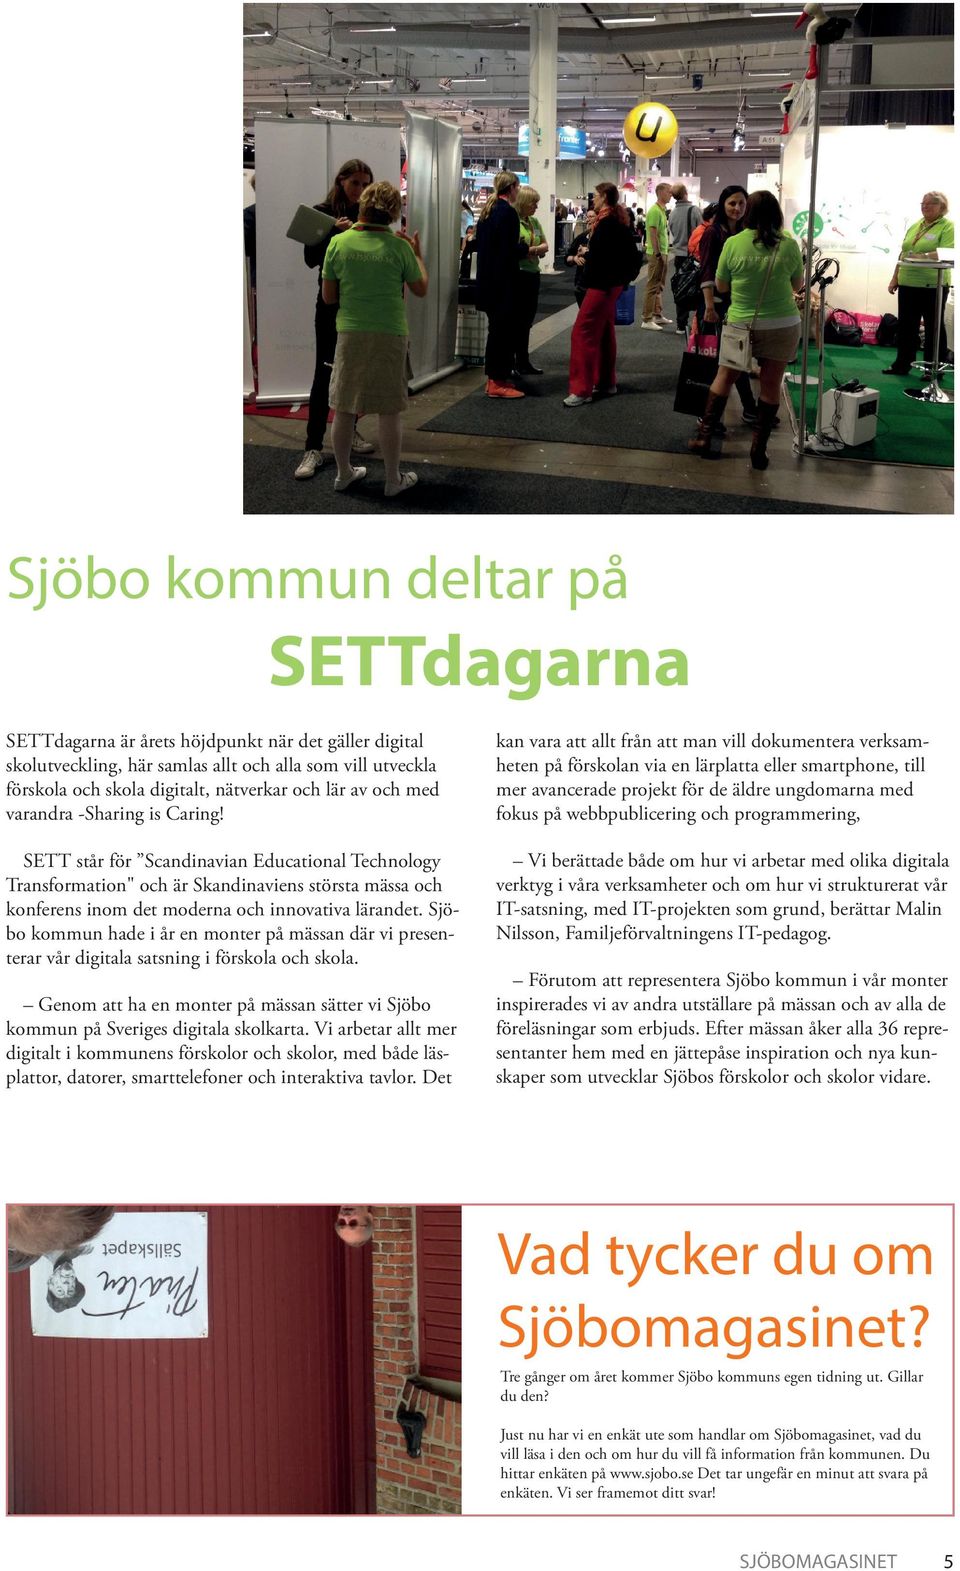 Sjöbo kommun hade i år en monter på mässan där vi presenterar vår digitala satsning i förskola och skola. Genom att ha en monter på mässan sätter vi Sjöbo kommun på Sveriges digitala skolkarta.